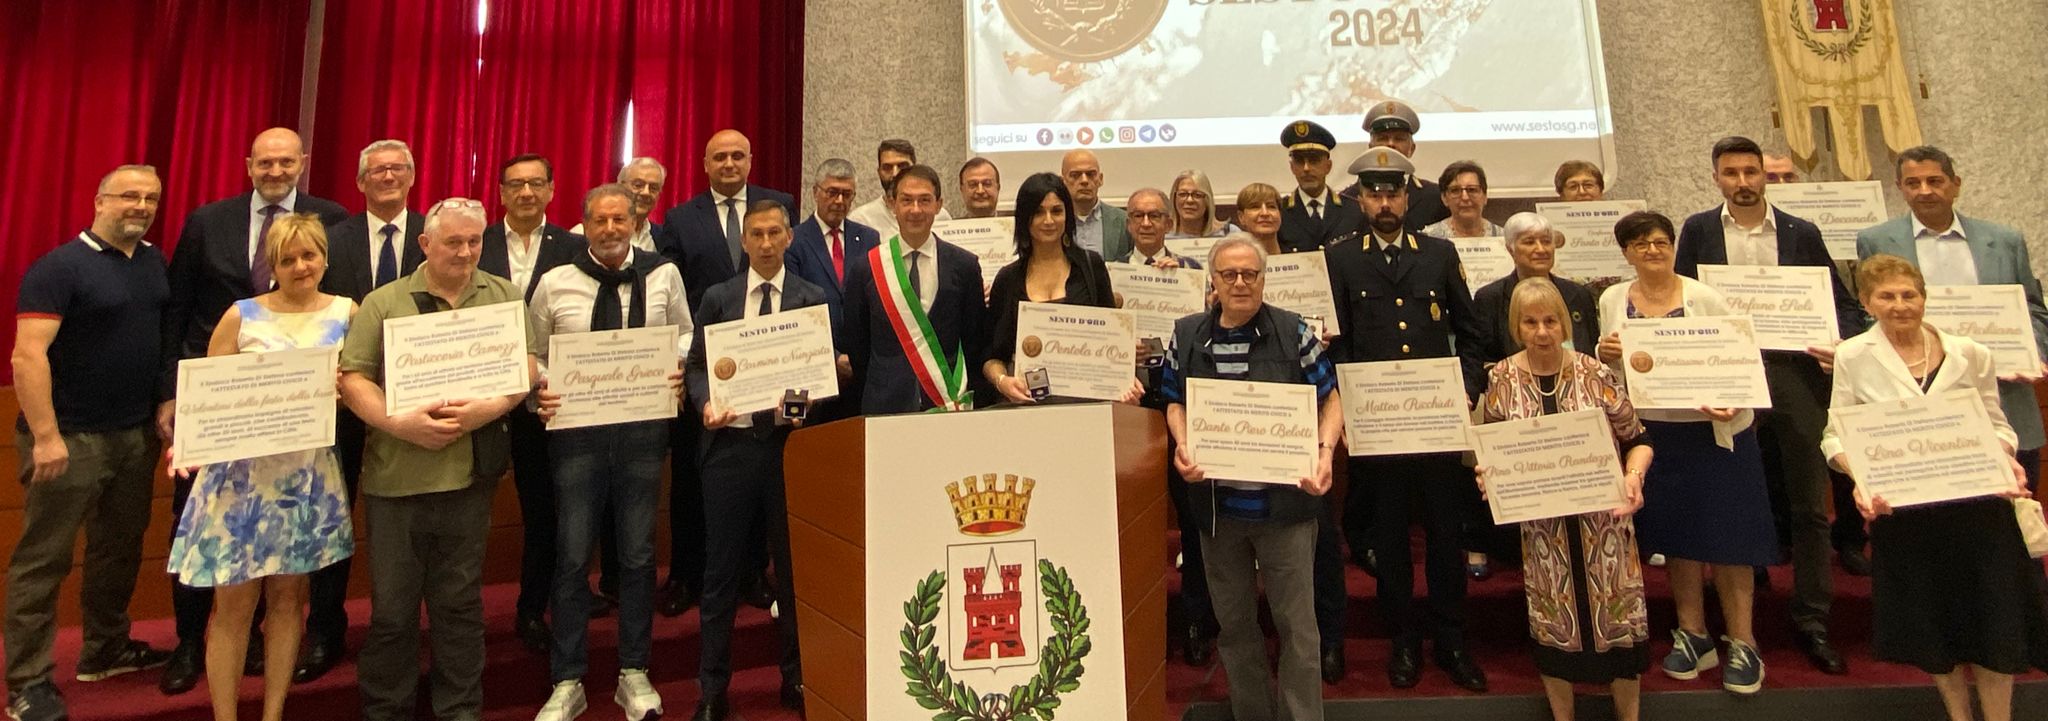 Premiazioni Sesto D’Oro 2024, il sindaco: “Tenete alto il nome della città in Italia e nel mondo, Sesto vi ringrazia ed è orgogliosa di voi”